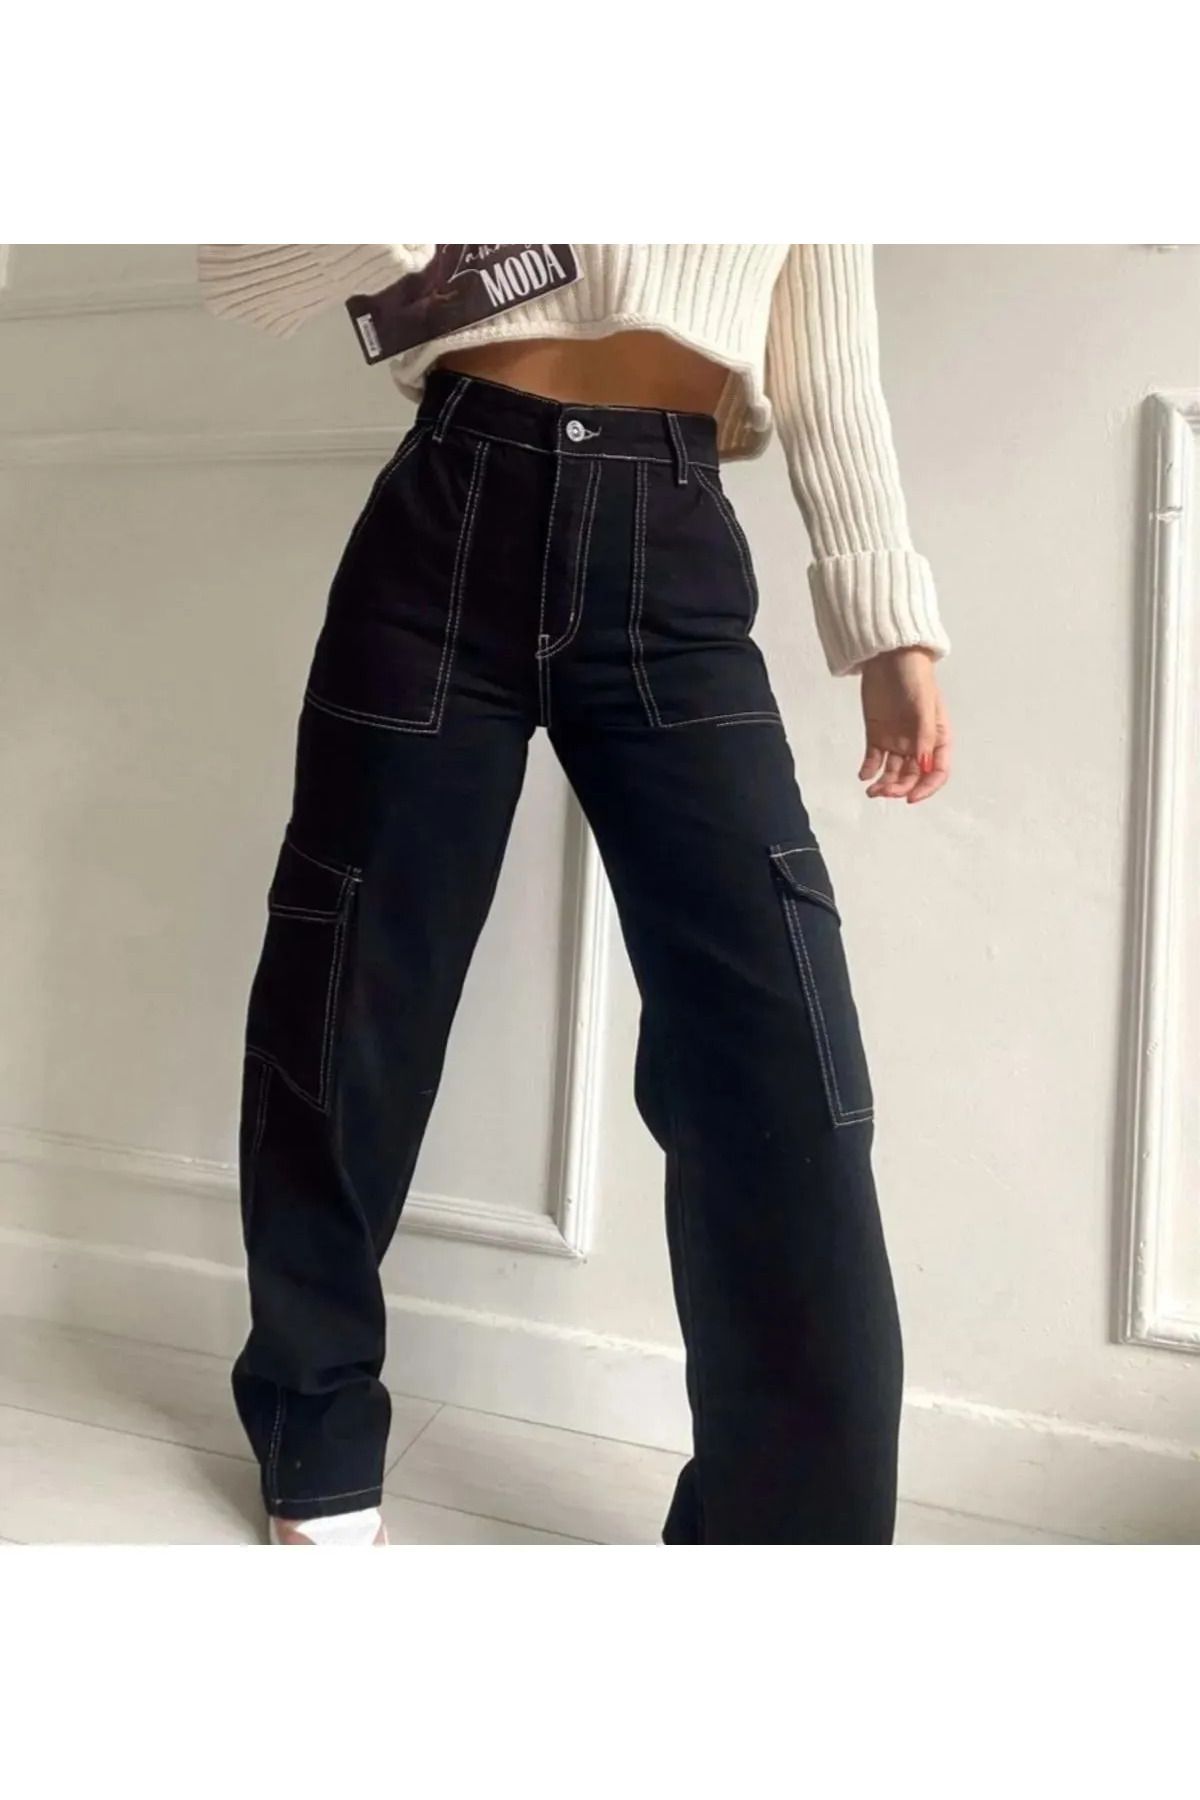 Asortix Kız Çocuk Siyah Ters Dikiş Detaylı Denim Kargo Pantolon Kot Jean